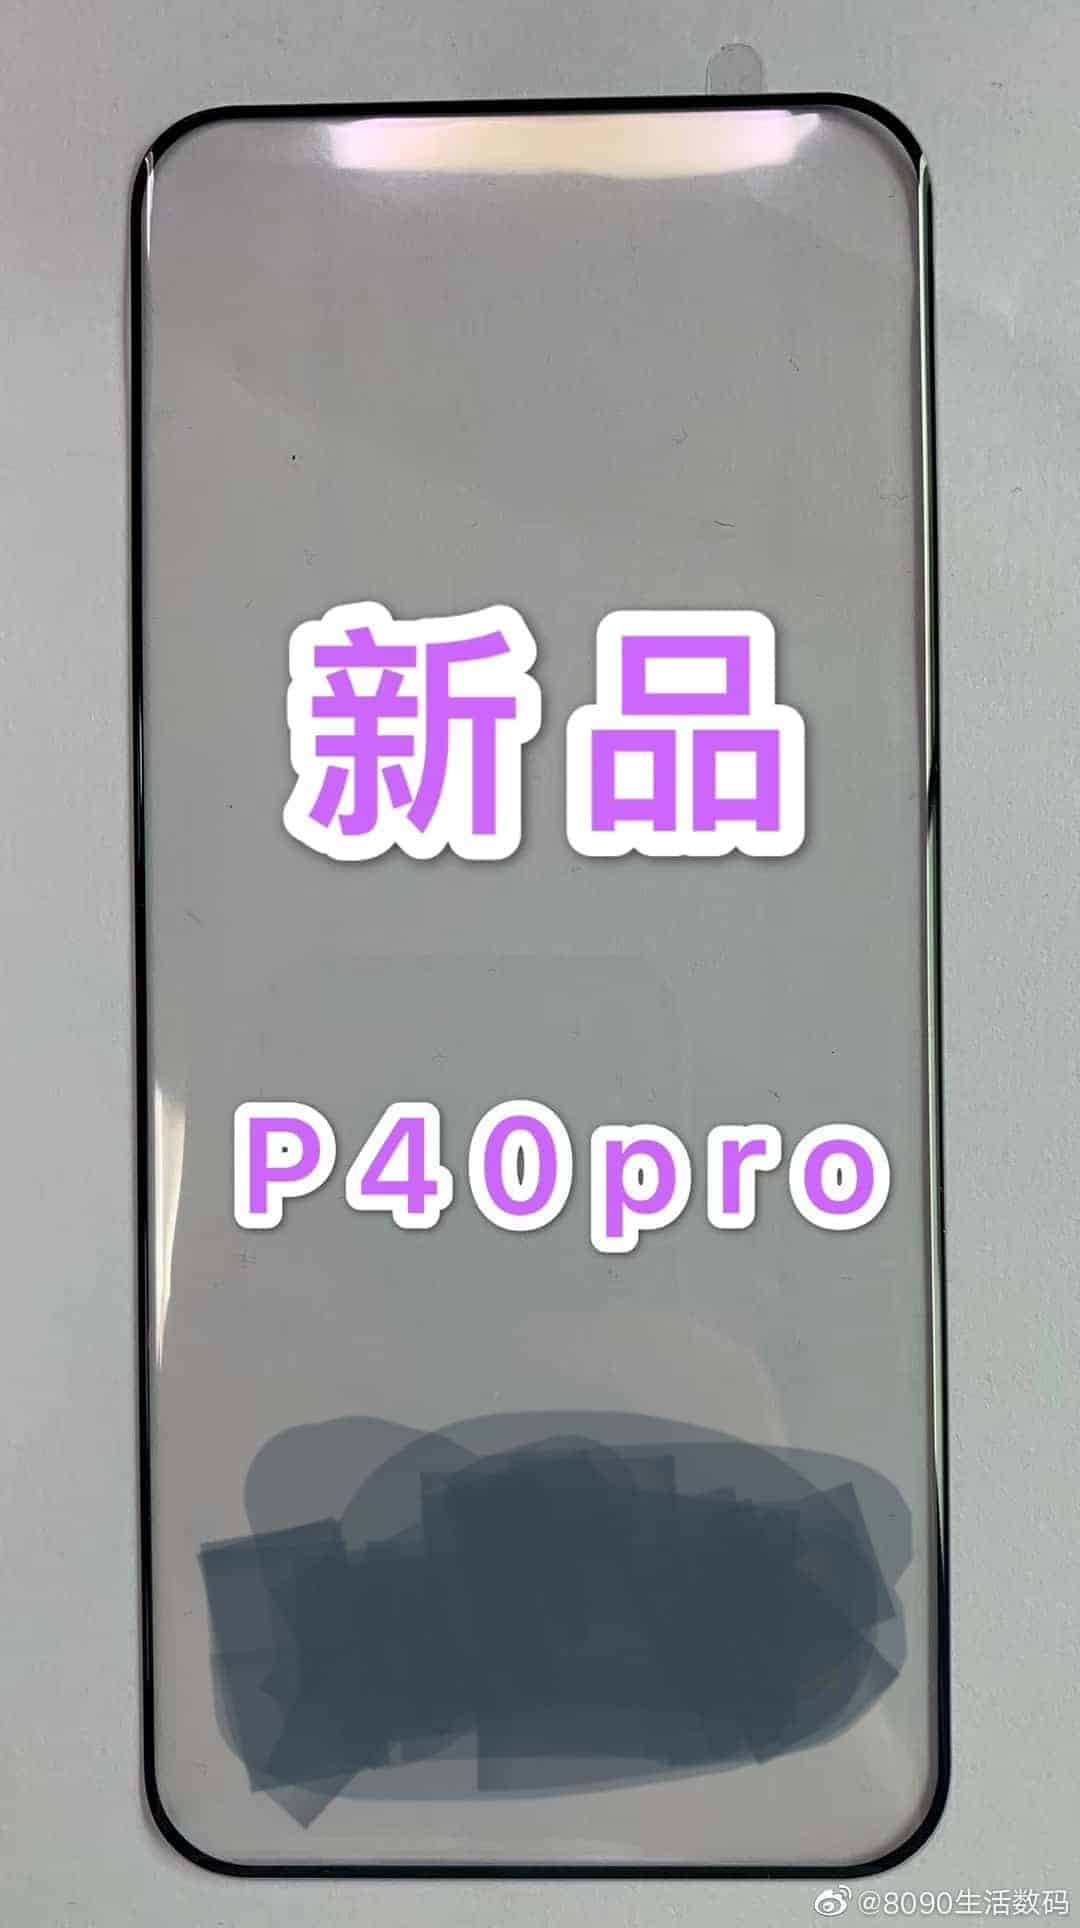 Huawei P40 Pro acaba